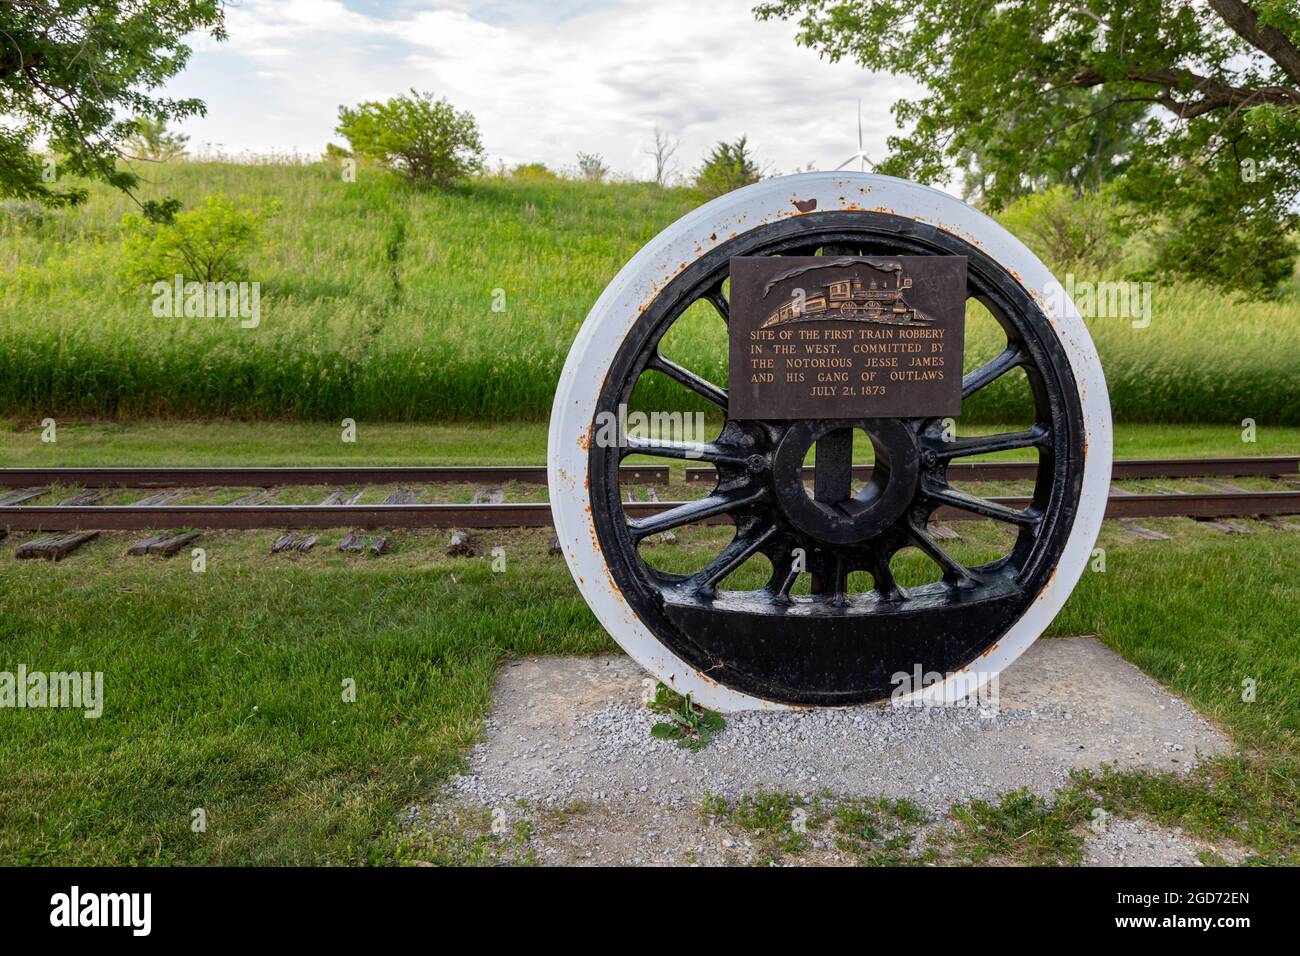 Adair, Iowa - die historische Stätte von Jesse James, der Ort des ersten Eisenbahnraubs im Westen, der von der Jesse James Gang am 21. Juli 1873 begangen wurde. Stockfoto